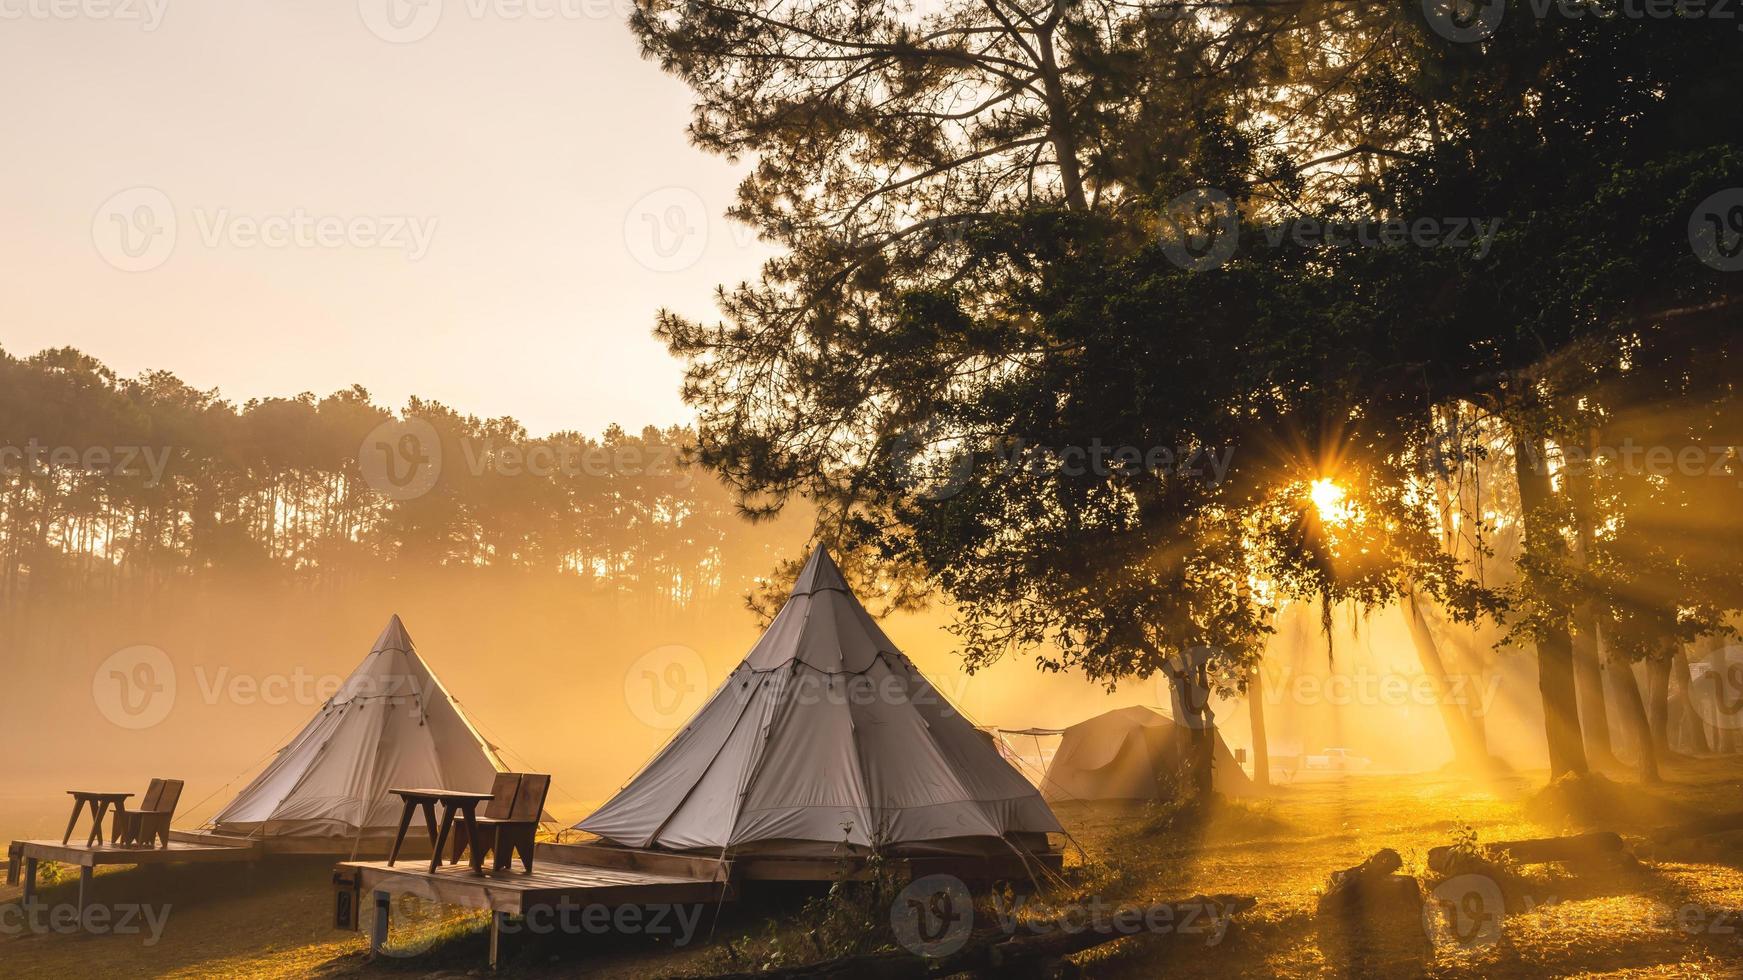 tält camping i de morgon- . på sväng salaeng luang nationell parkera Phetchabun provins, thailand foto